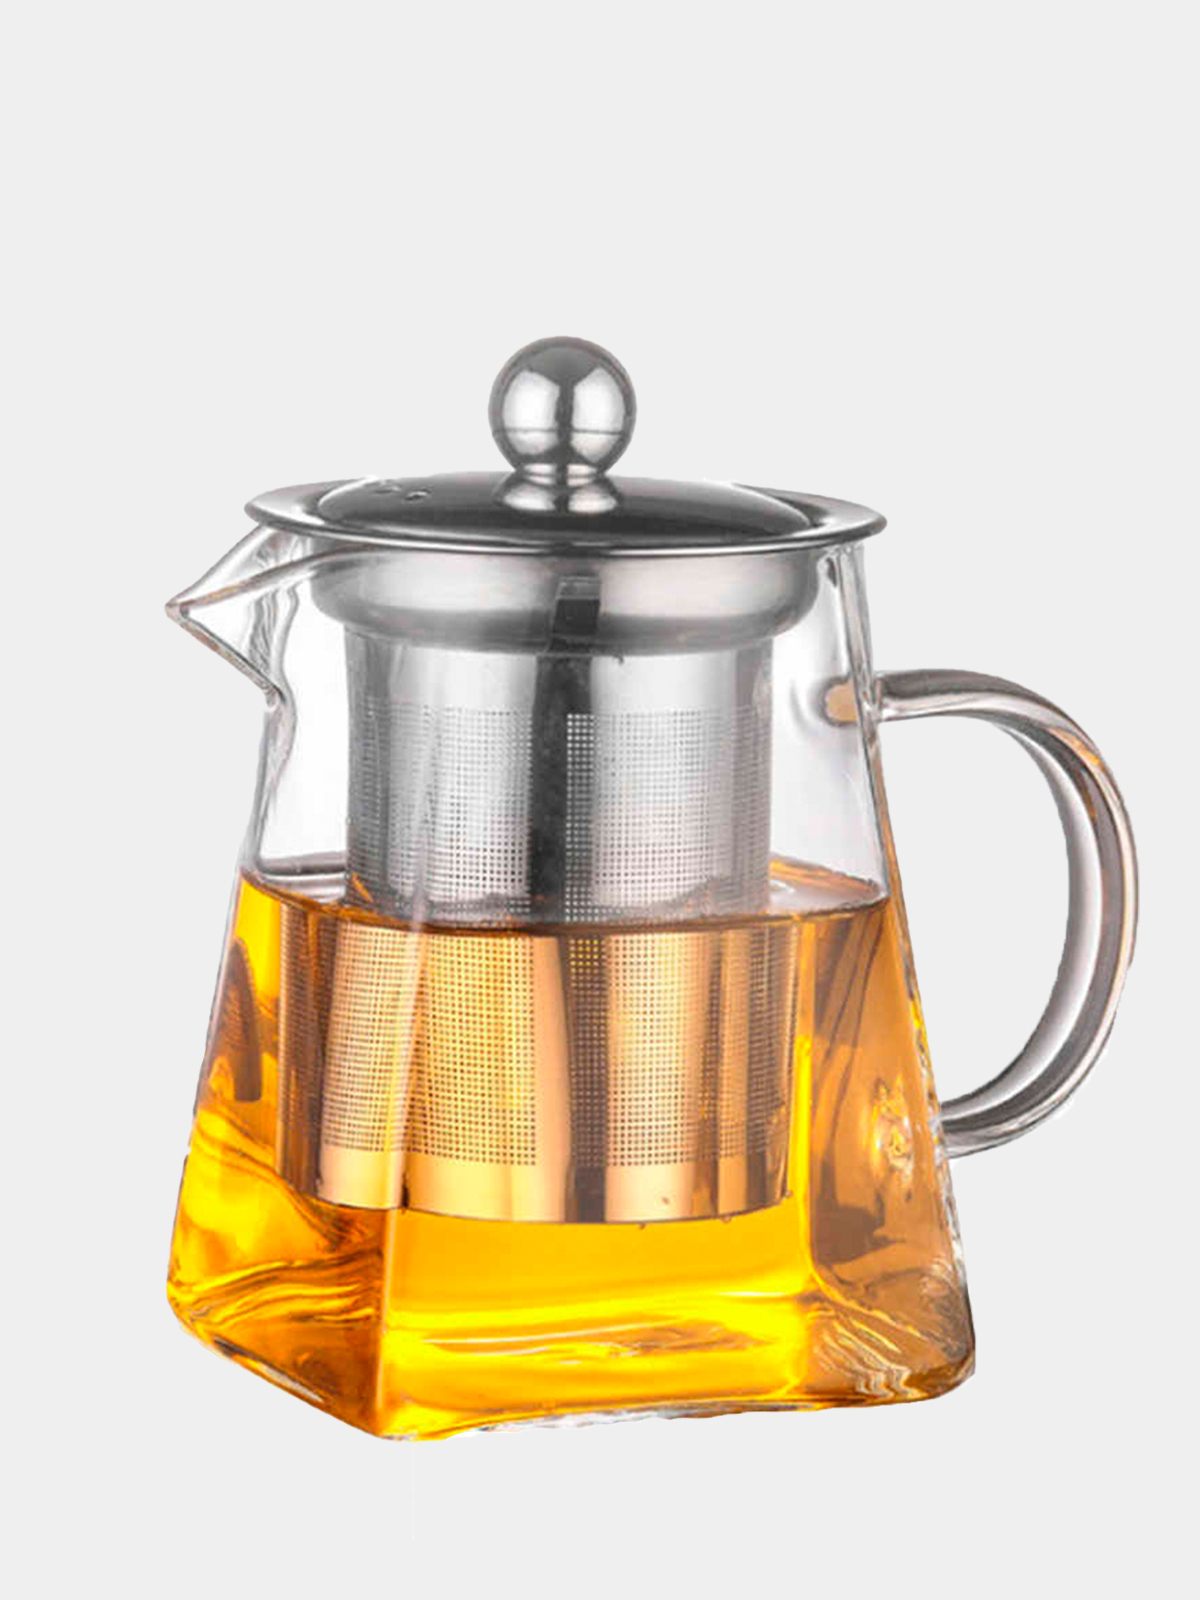 Стеклянный чайник для заварки. Чайник заварочный стеклянный Glass Teapot. Чайник заварочный, стеклянный, 1500 мл, Handy, perfecto. 500 Мл стеклянный чайник Infuser Filter. Чайник заварочный стеклянный 550 мл.